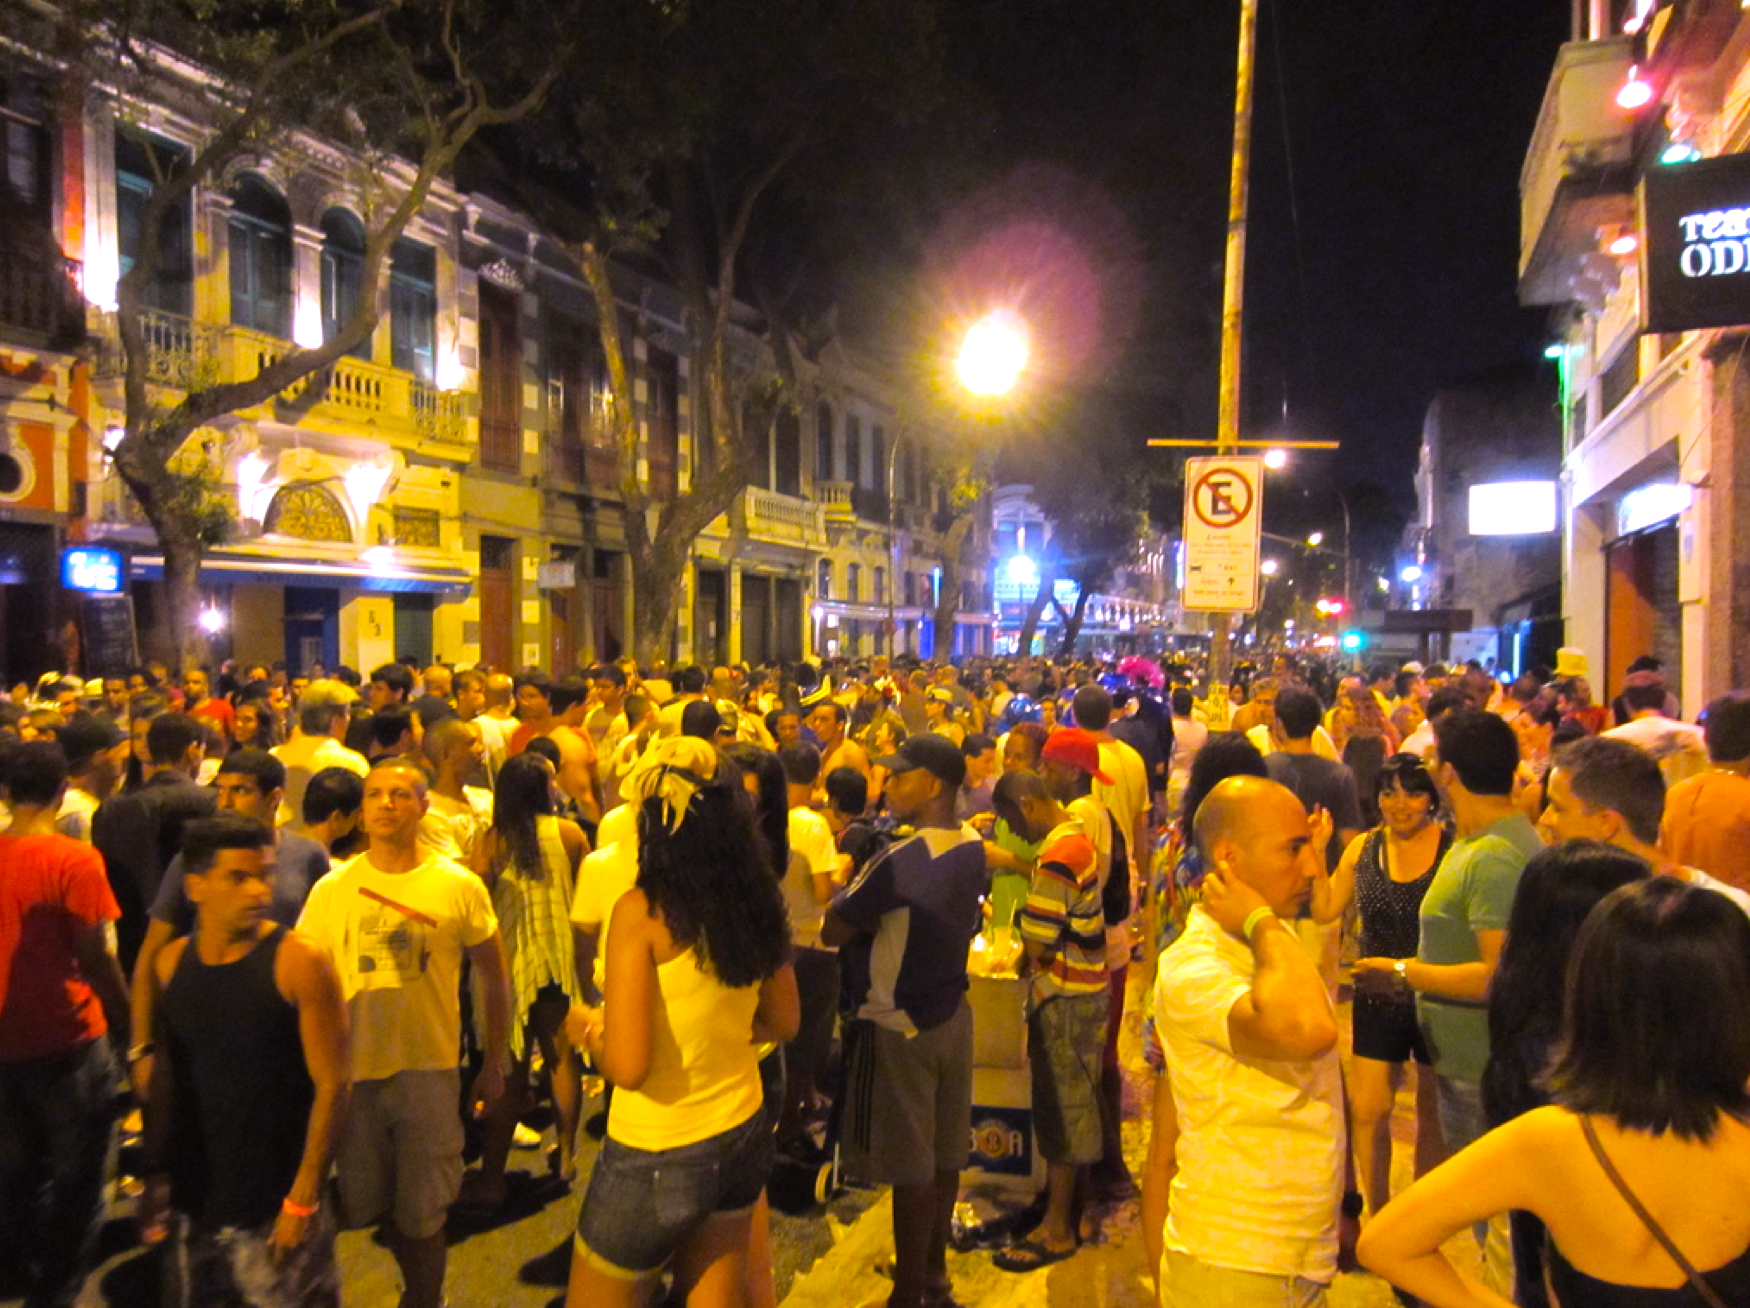 Visiting Rio’s Best Weekly Street Parties